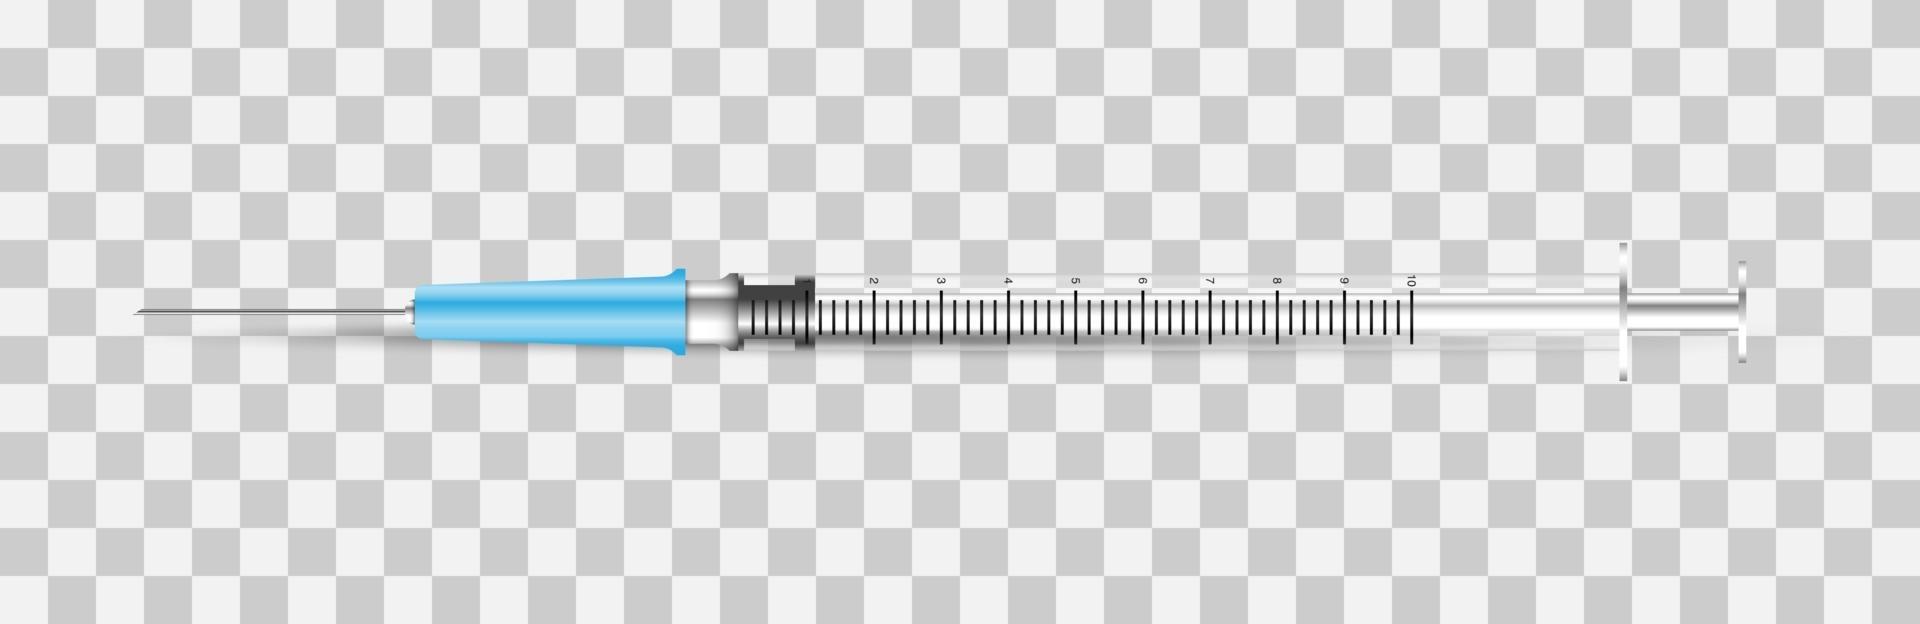 seringa descartável médica com agulha isolada, ilustração vetorial vetor